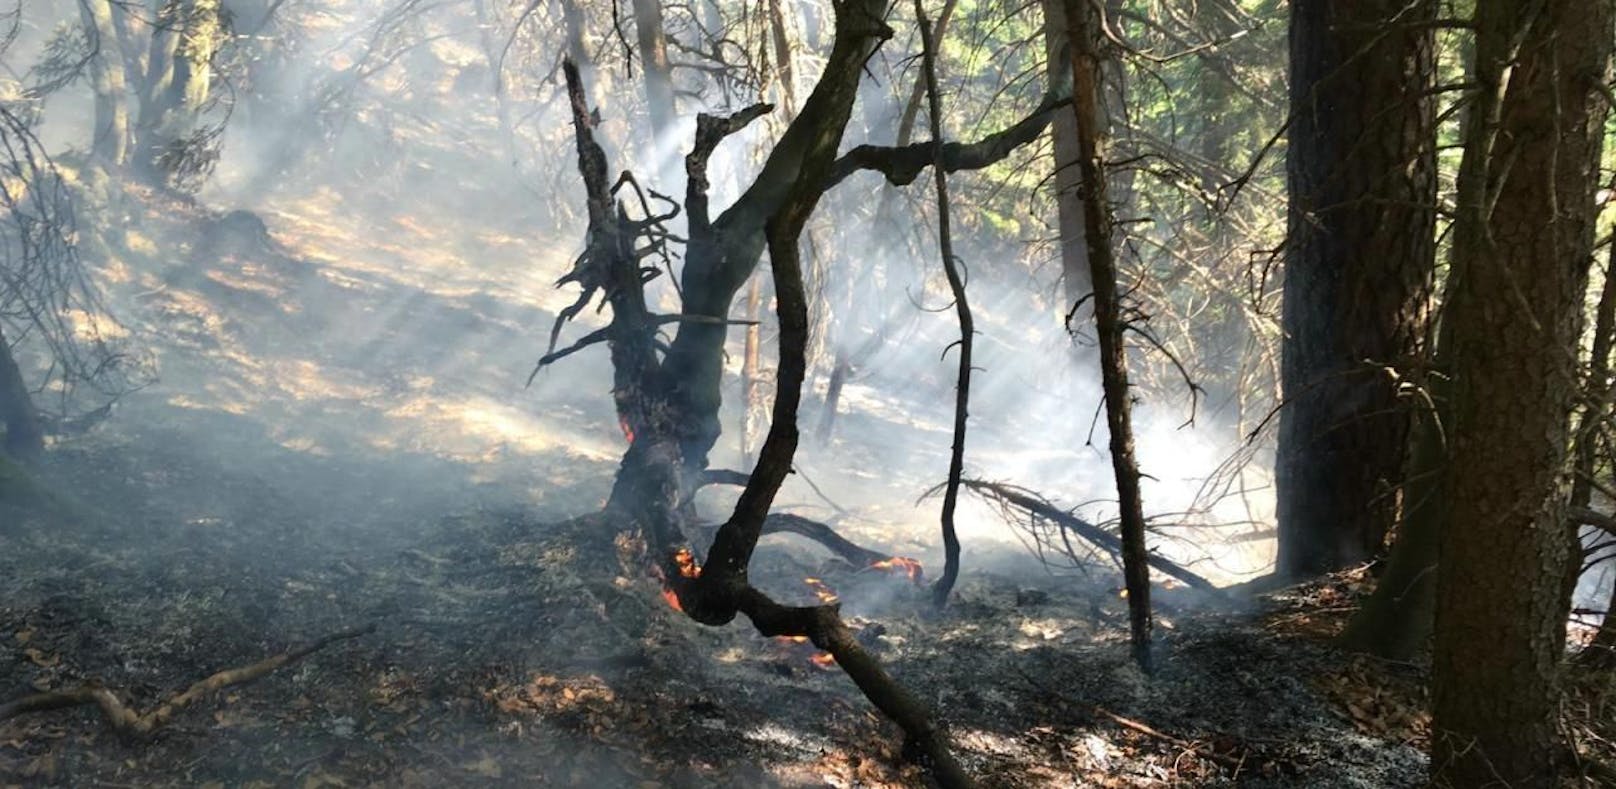 120 Florianis löschten zwei Hektar großen Waldbrand